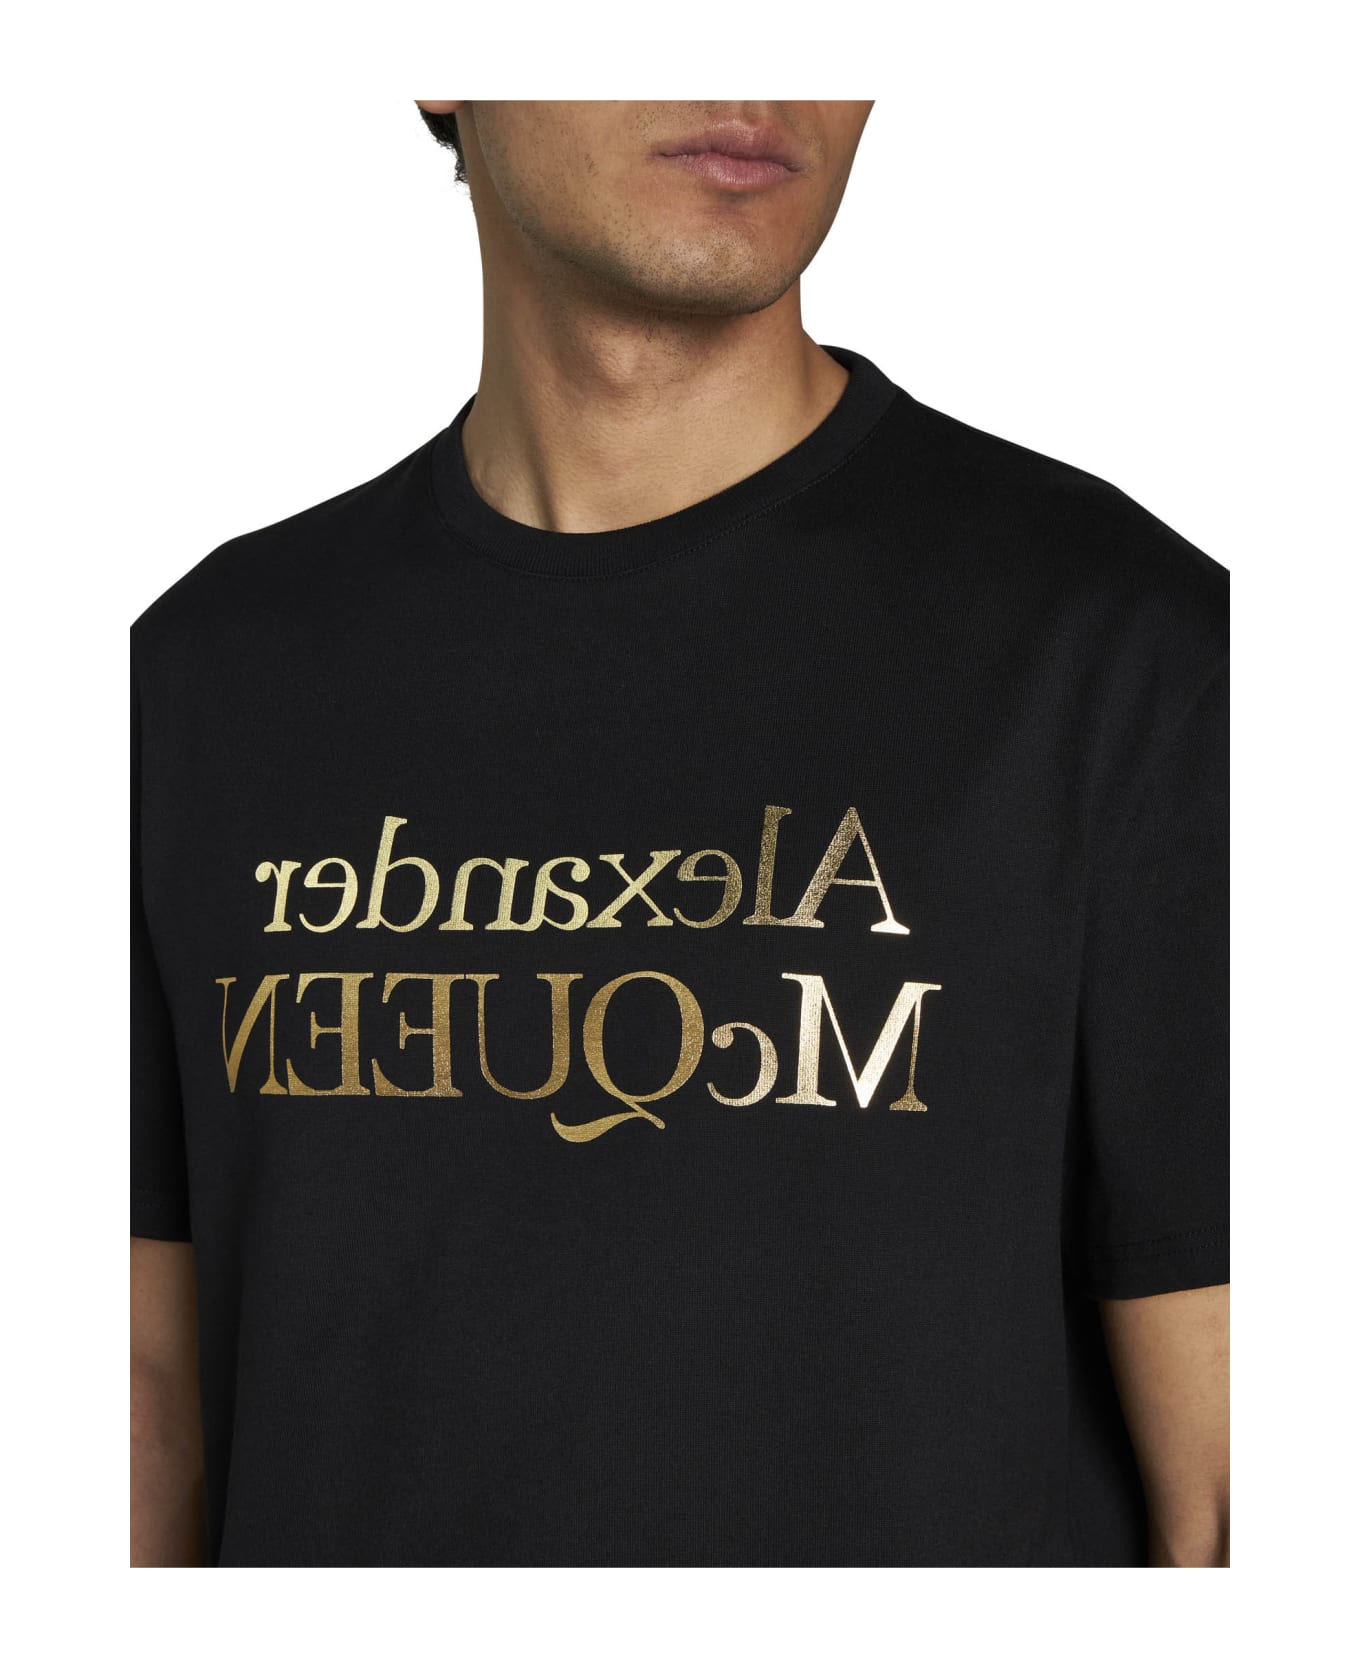 Alexander McQueen T-shirt With Logo - Black/gold